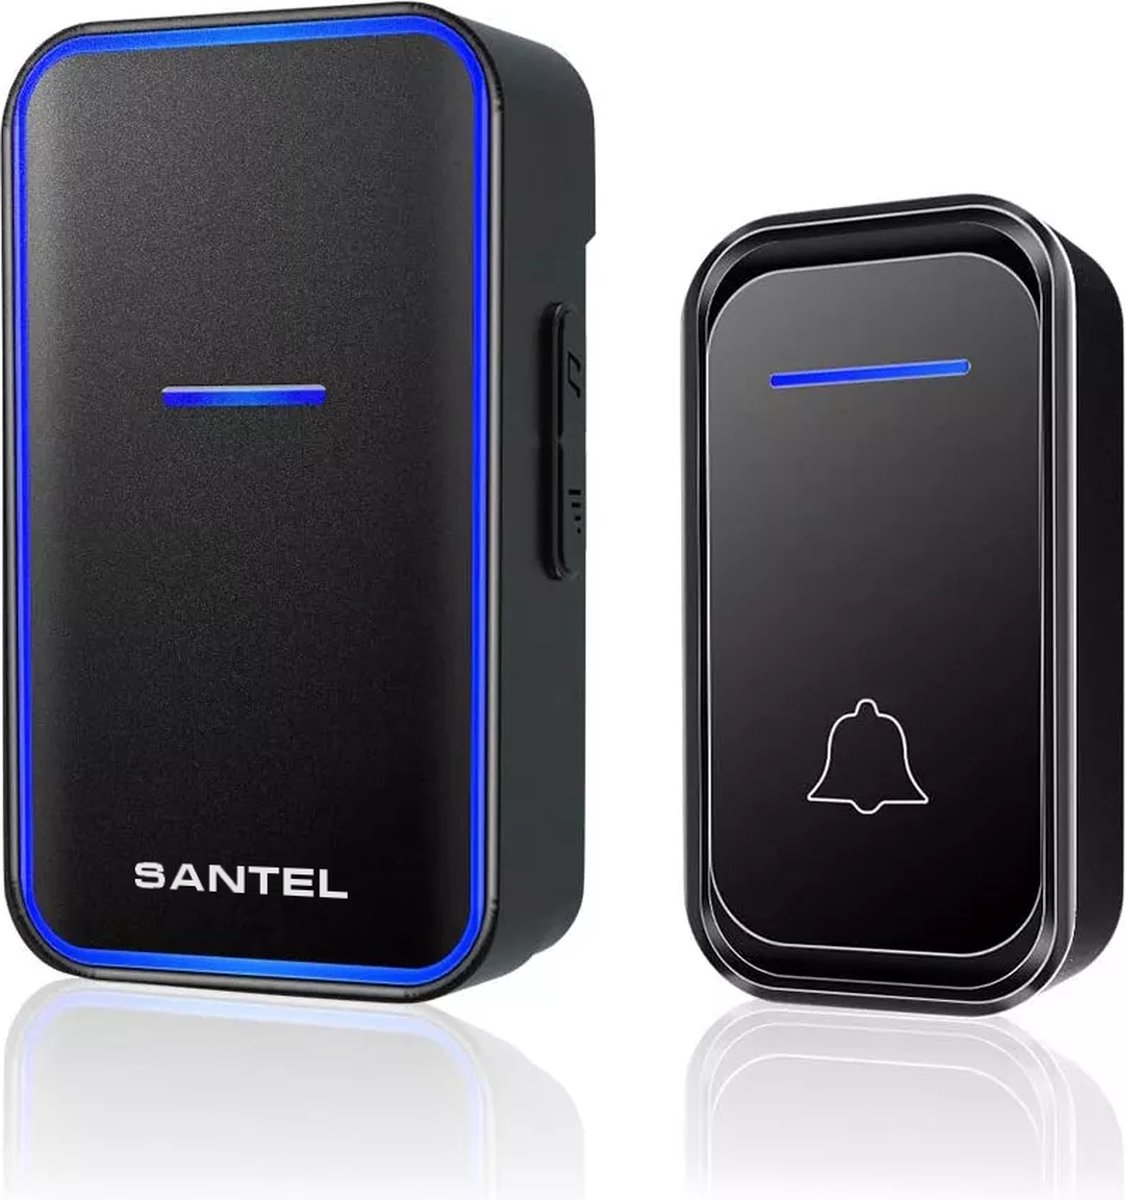 Santel - Draadloze Deurbel - Draadloos - Deur Bel - Deurbellen - Wireless doorbell Waterdicht IP44 - Met Ontvanger - Zwart